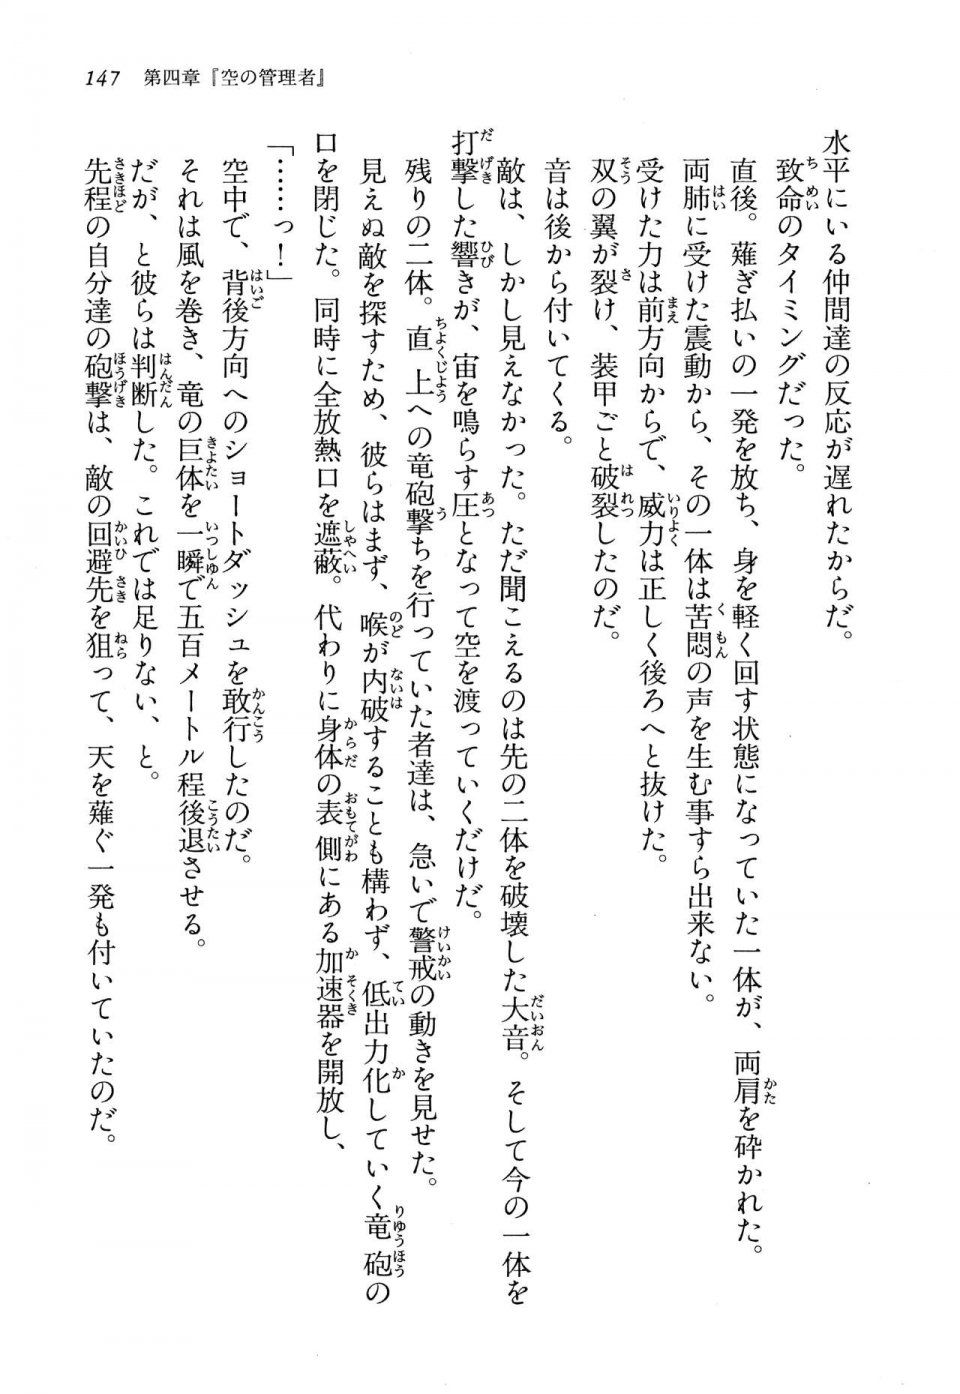 Kyoukai Senjou no Horizon LN Vol 13(6A) - Photo #147